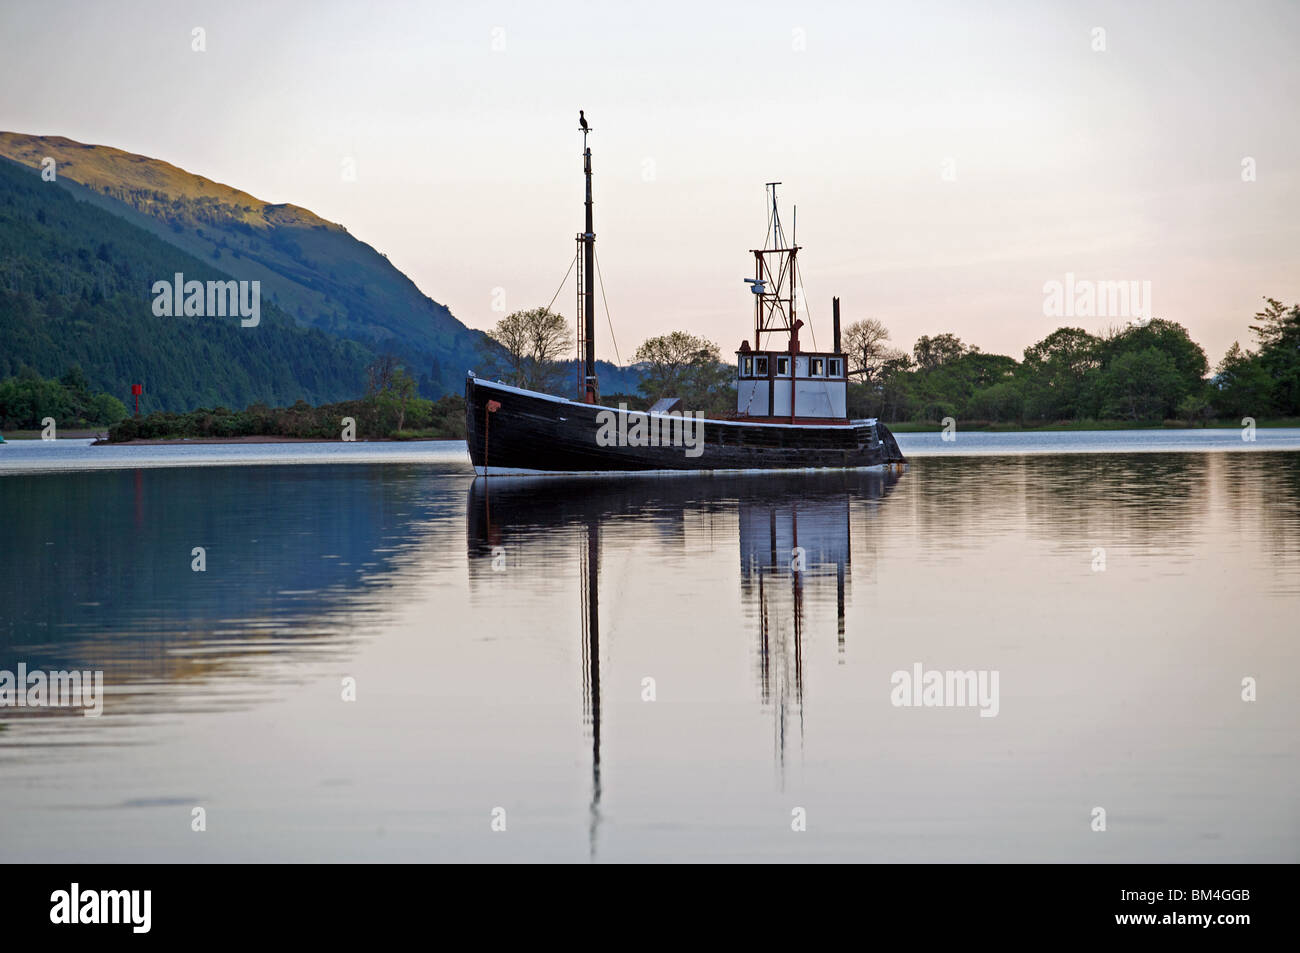 Fishing boat, loch Laggan, Highland, Scotland, UK. Stock Photo